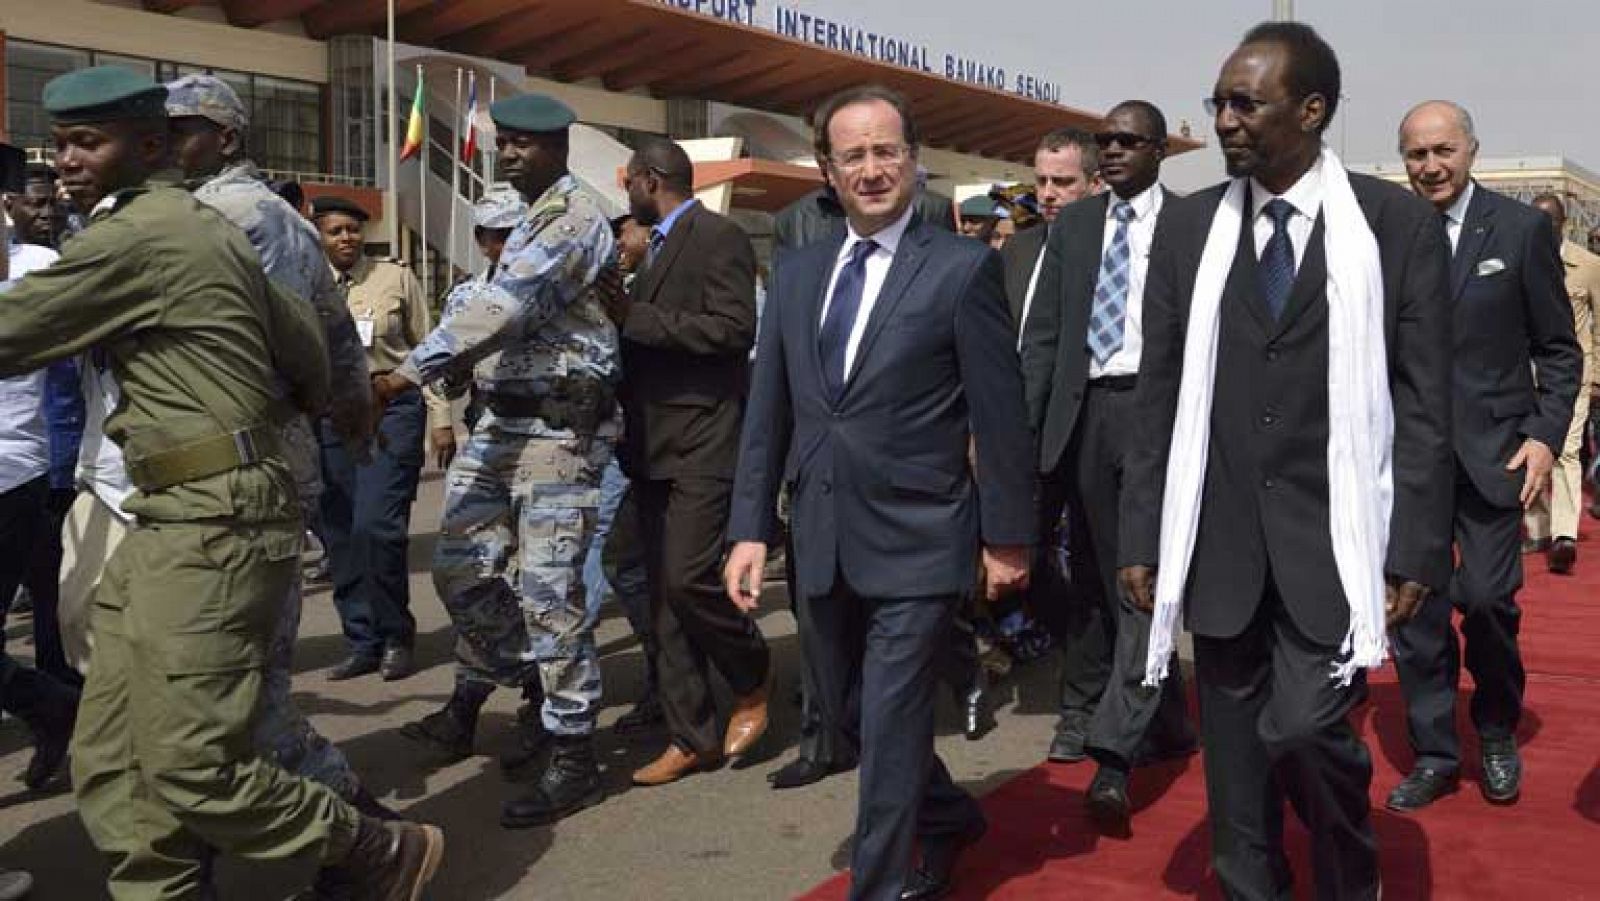 A Hollande le han recibido en Mali más como a un libertador que como a un presidente